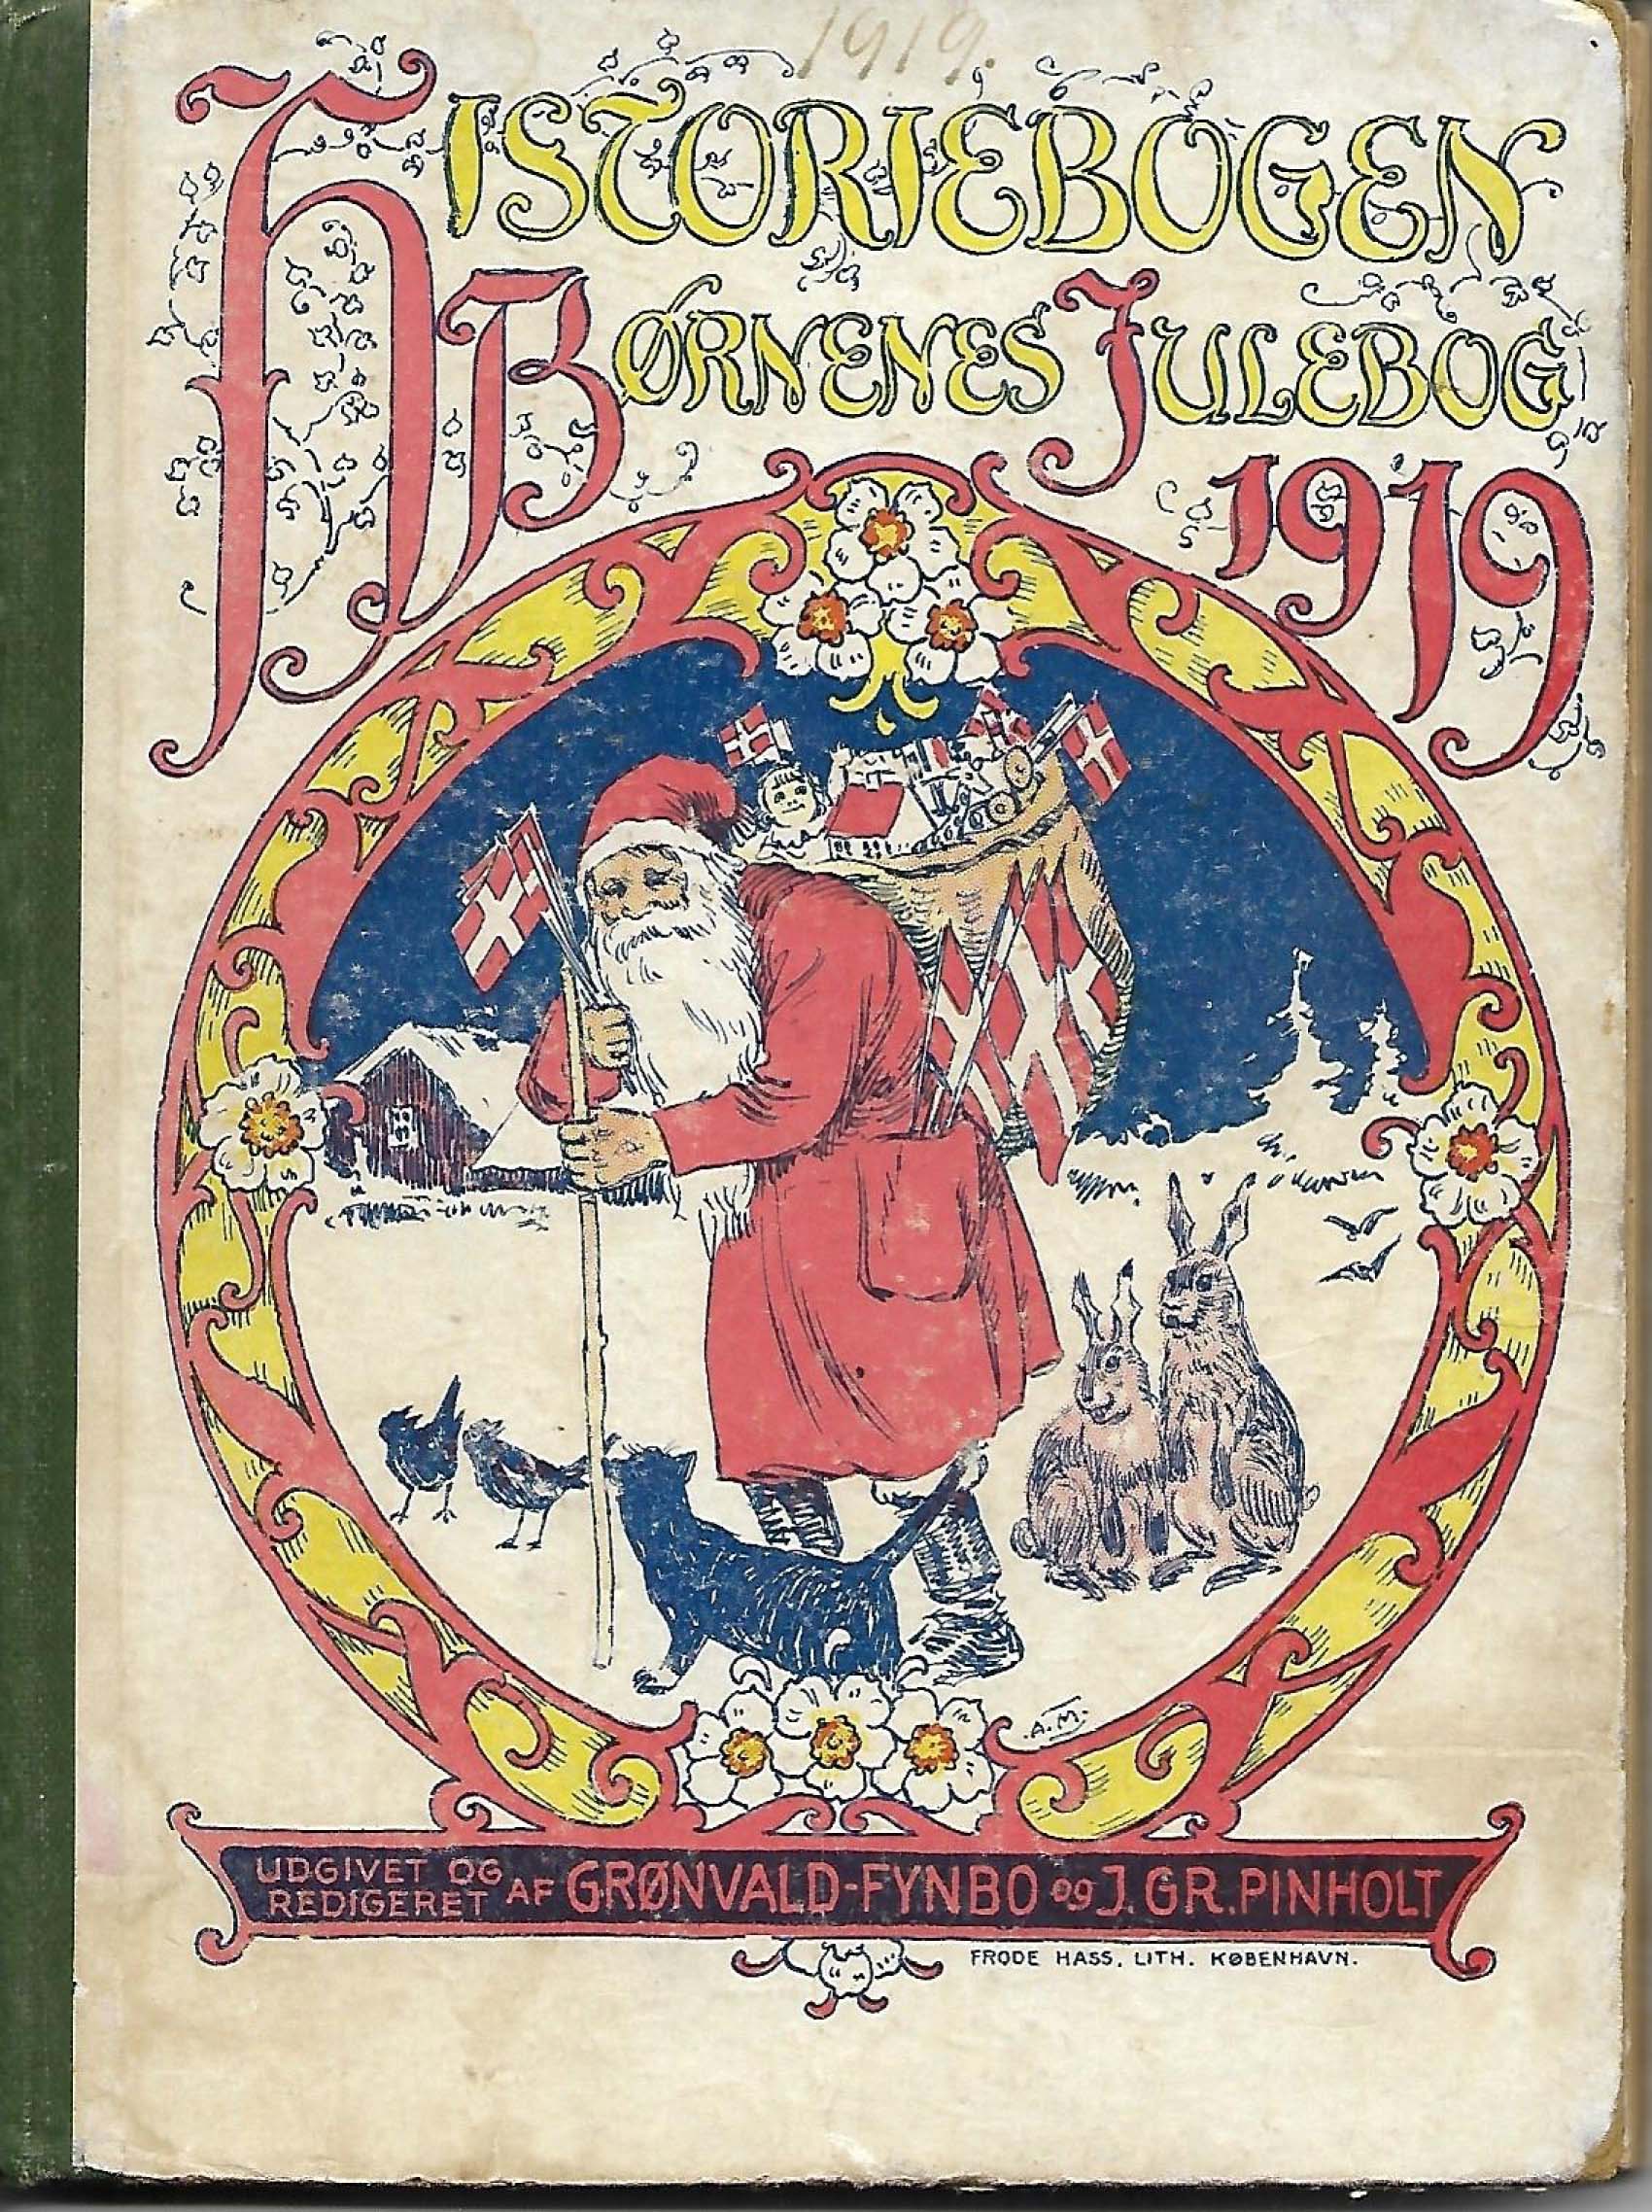 1919 Historiebogen